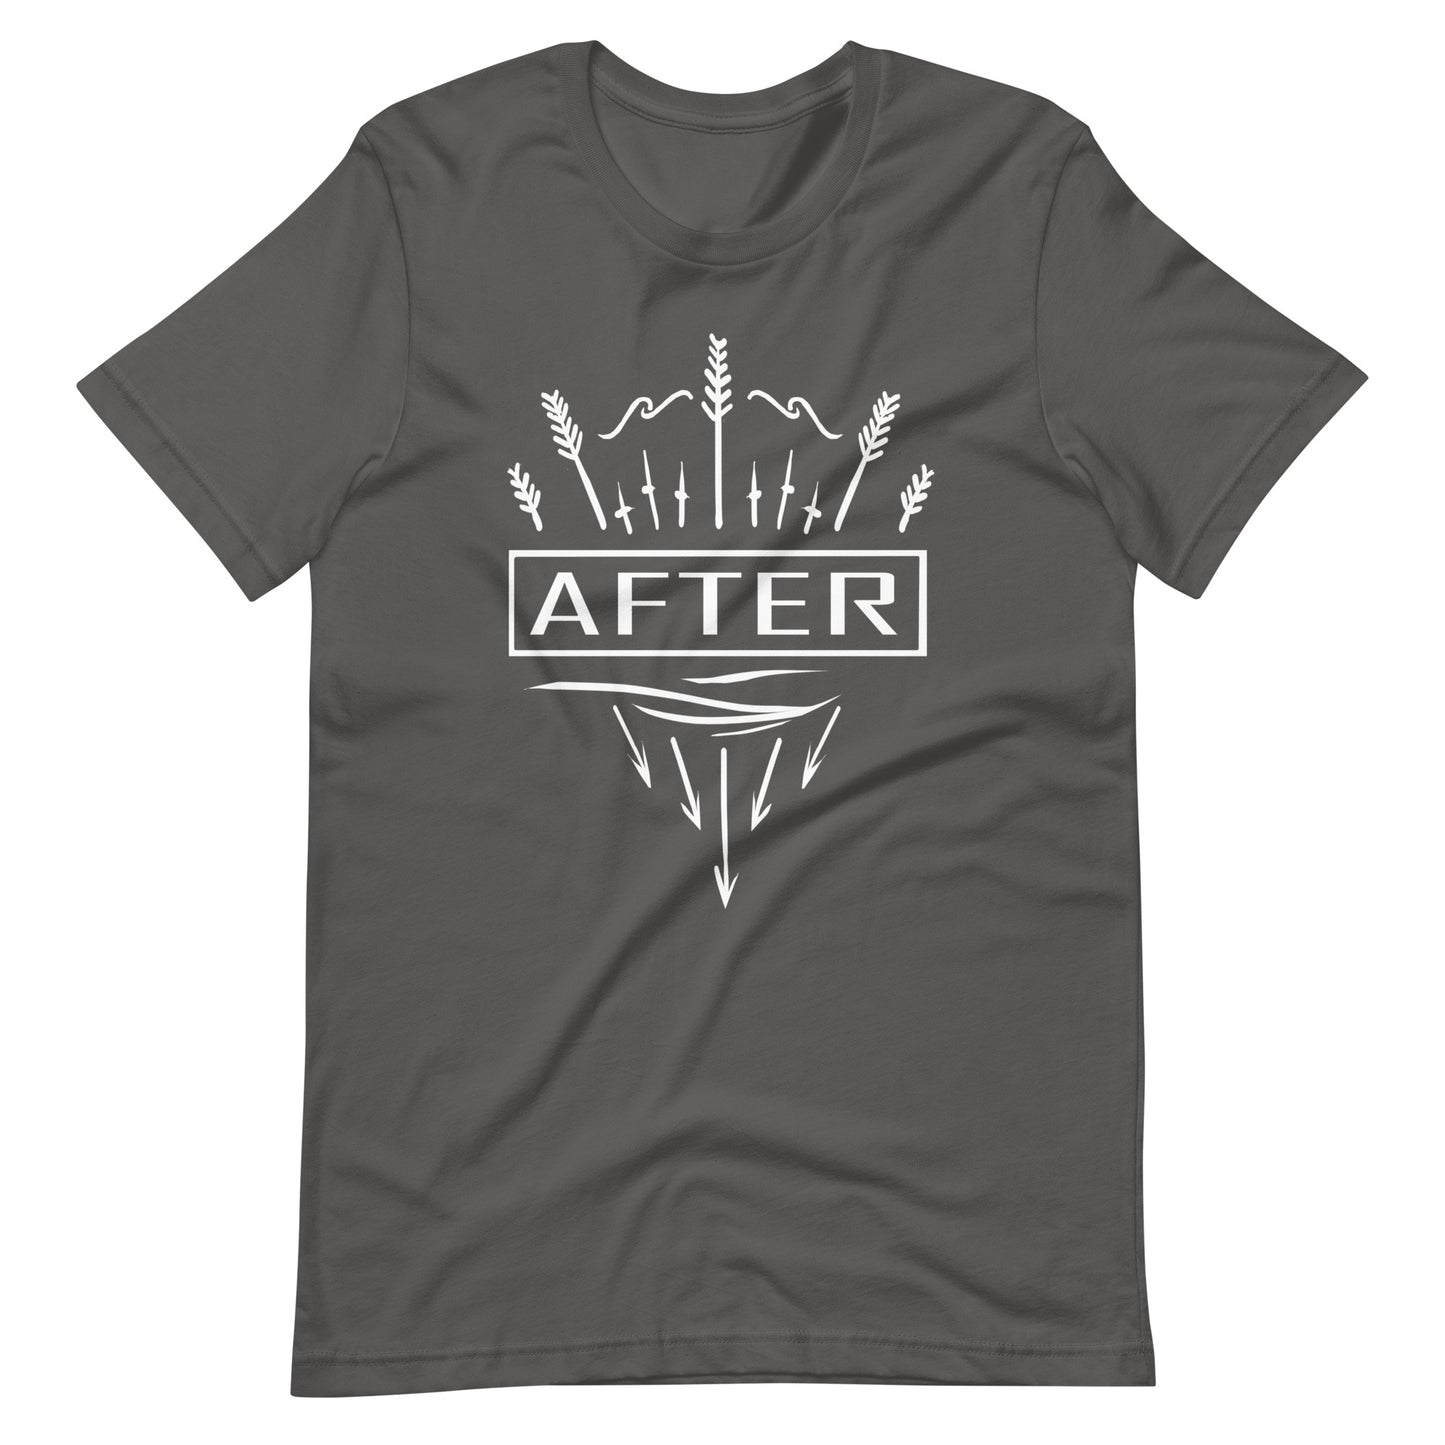 After - Men's t-shirt - Asphalt Front